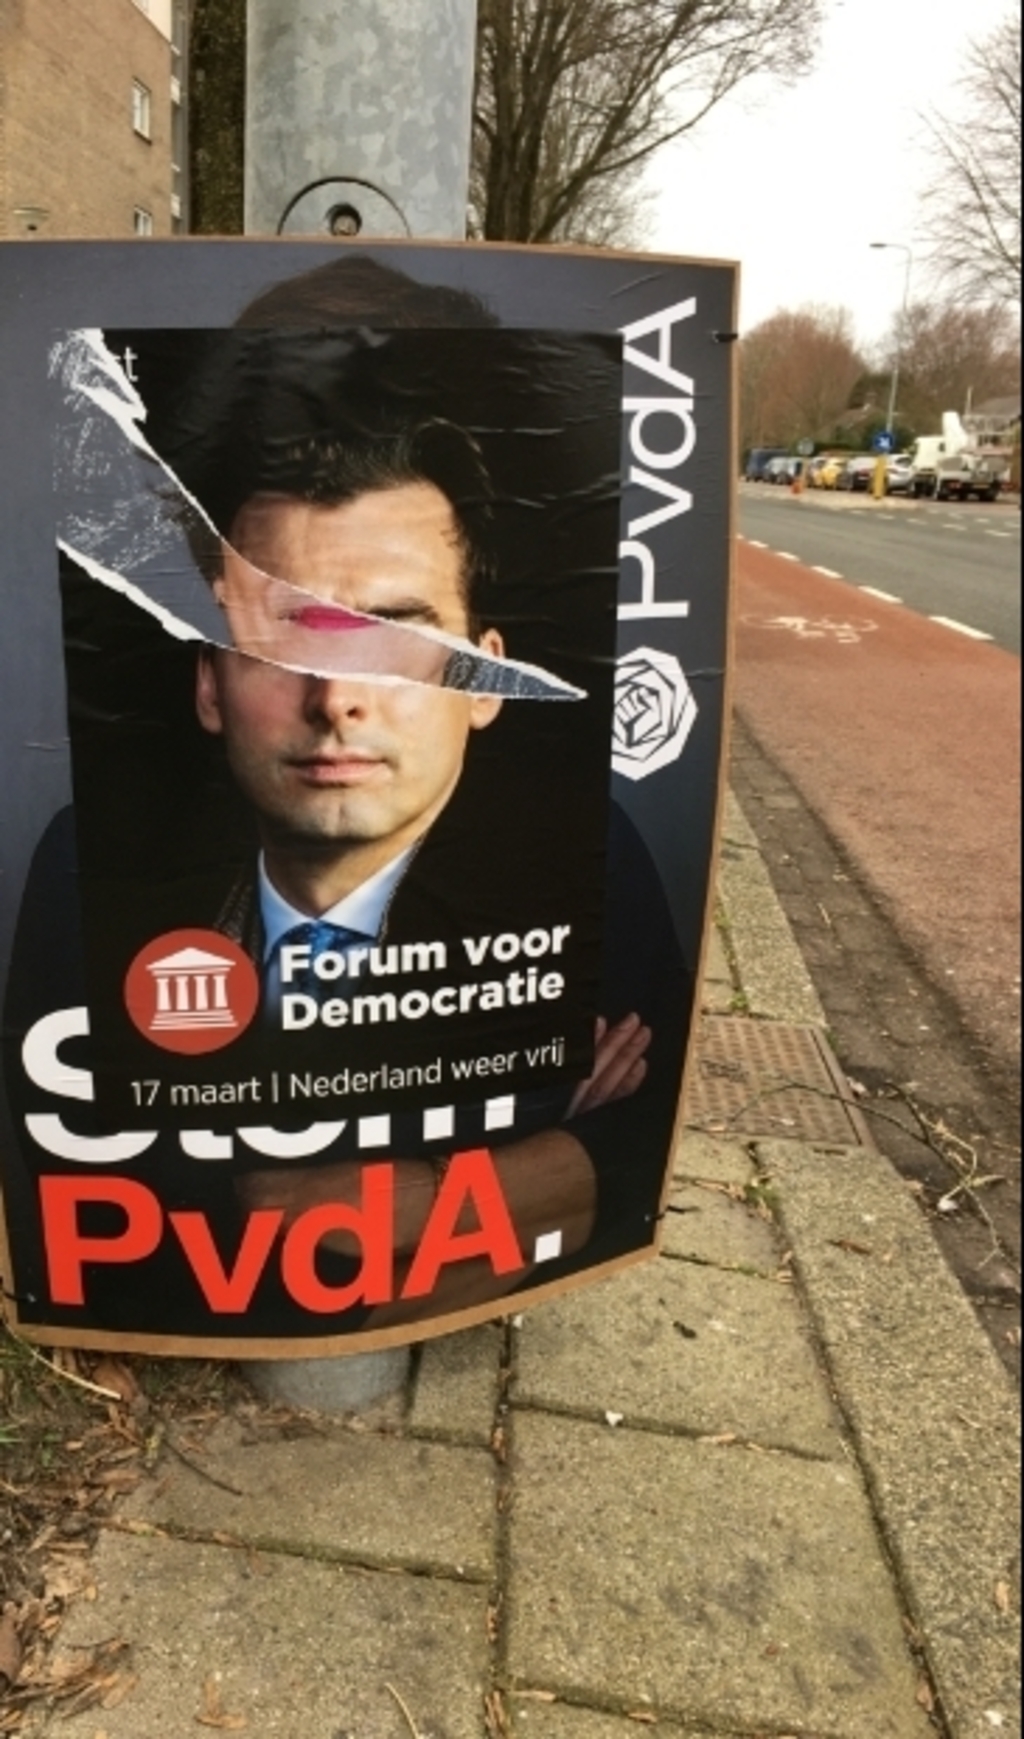 Forum voor Democratie heeft posters over de poster van PvdA geplakt volgens Dick Hornberg van PvdA Heemskerk.